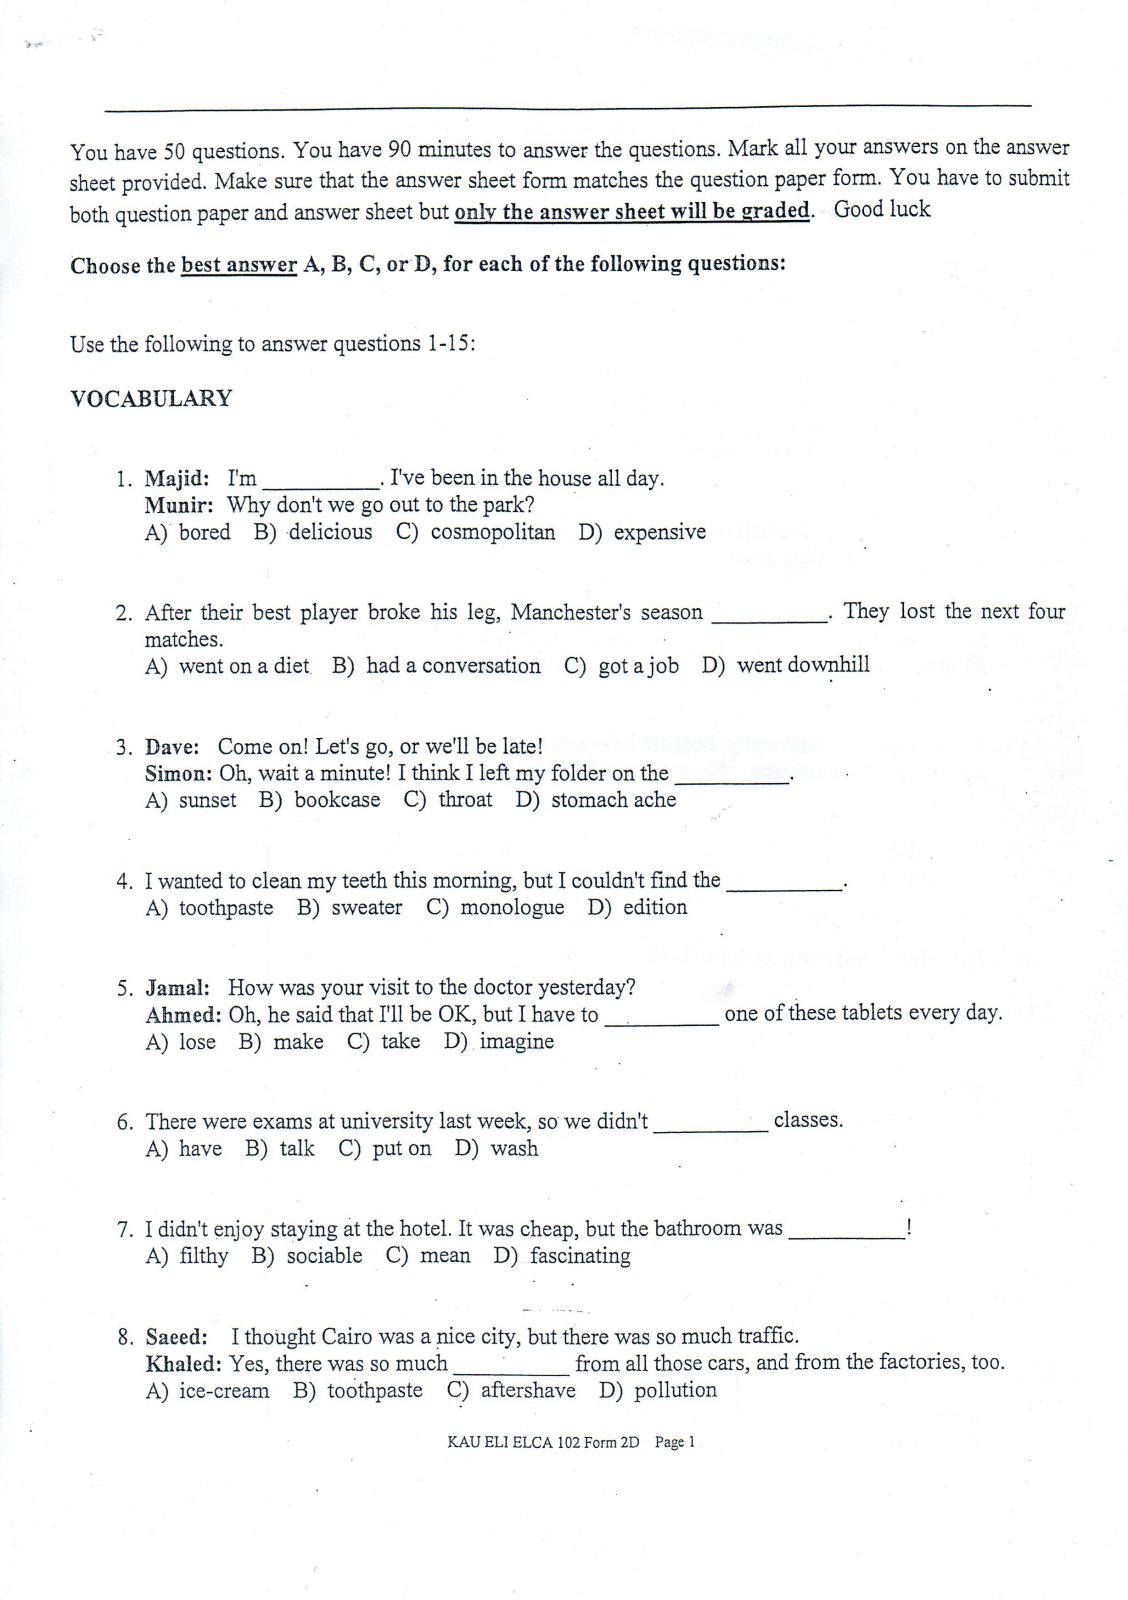 اسئلة مادة اللغة الانجليزية elca 101 انتساب الفصل الدراسي الأول 1434هـ نموذج (d)